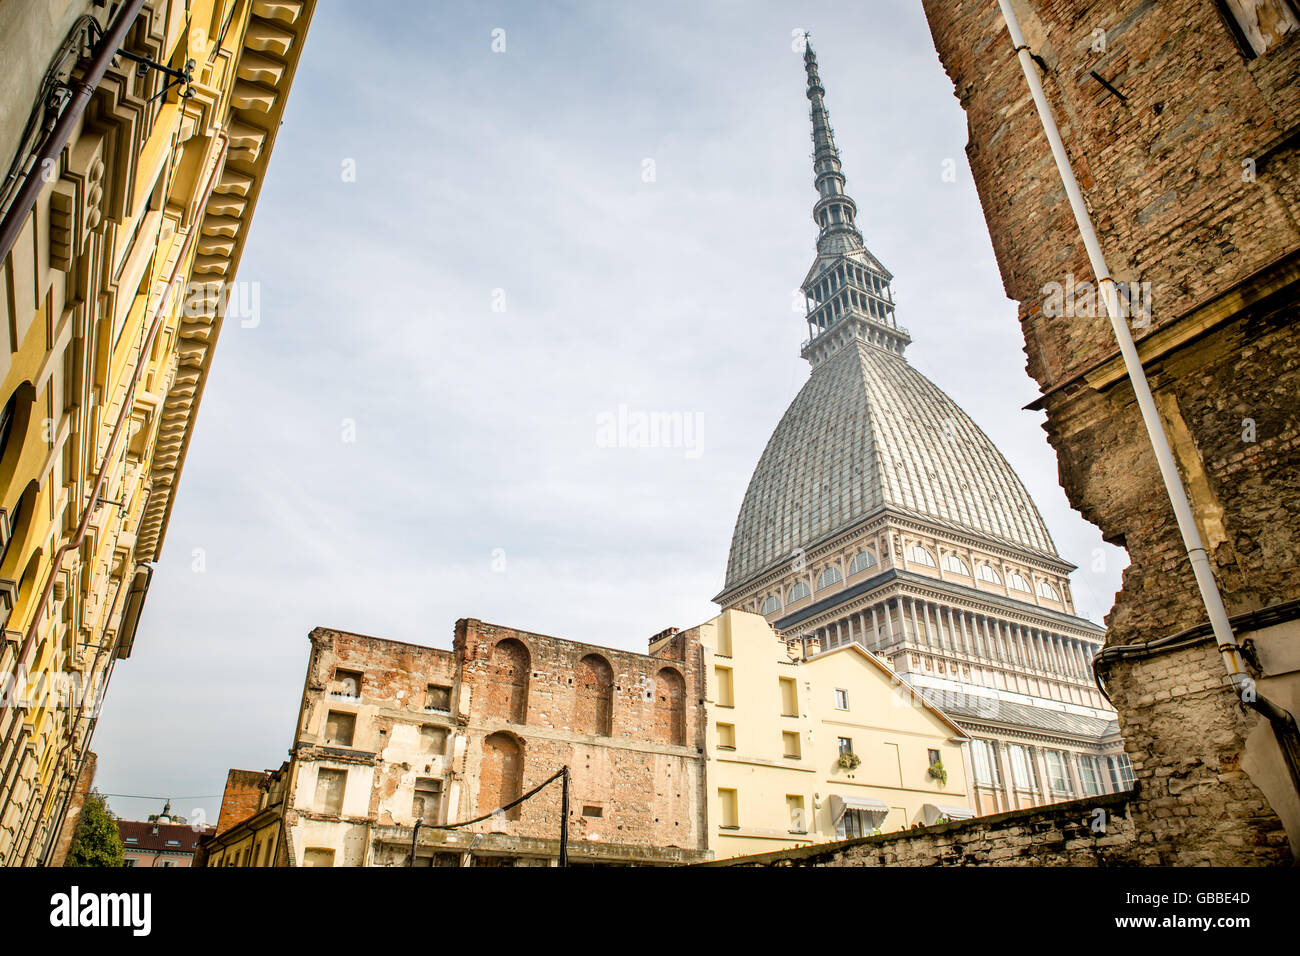 Vue de la Mole Antonelliana, à Turin, Italie. Banque D'Images